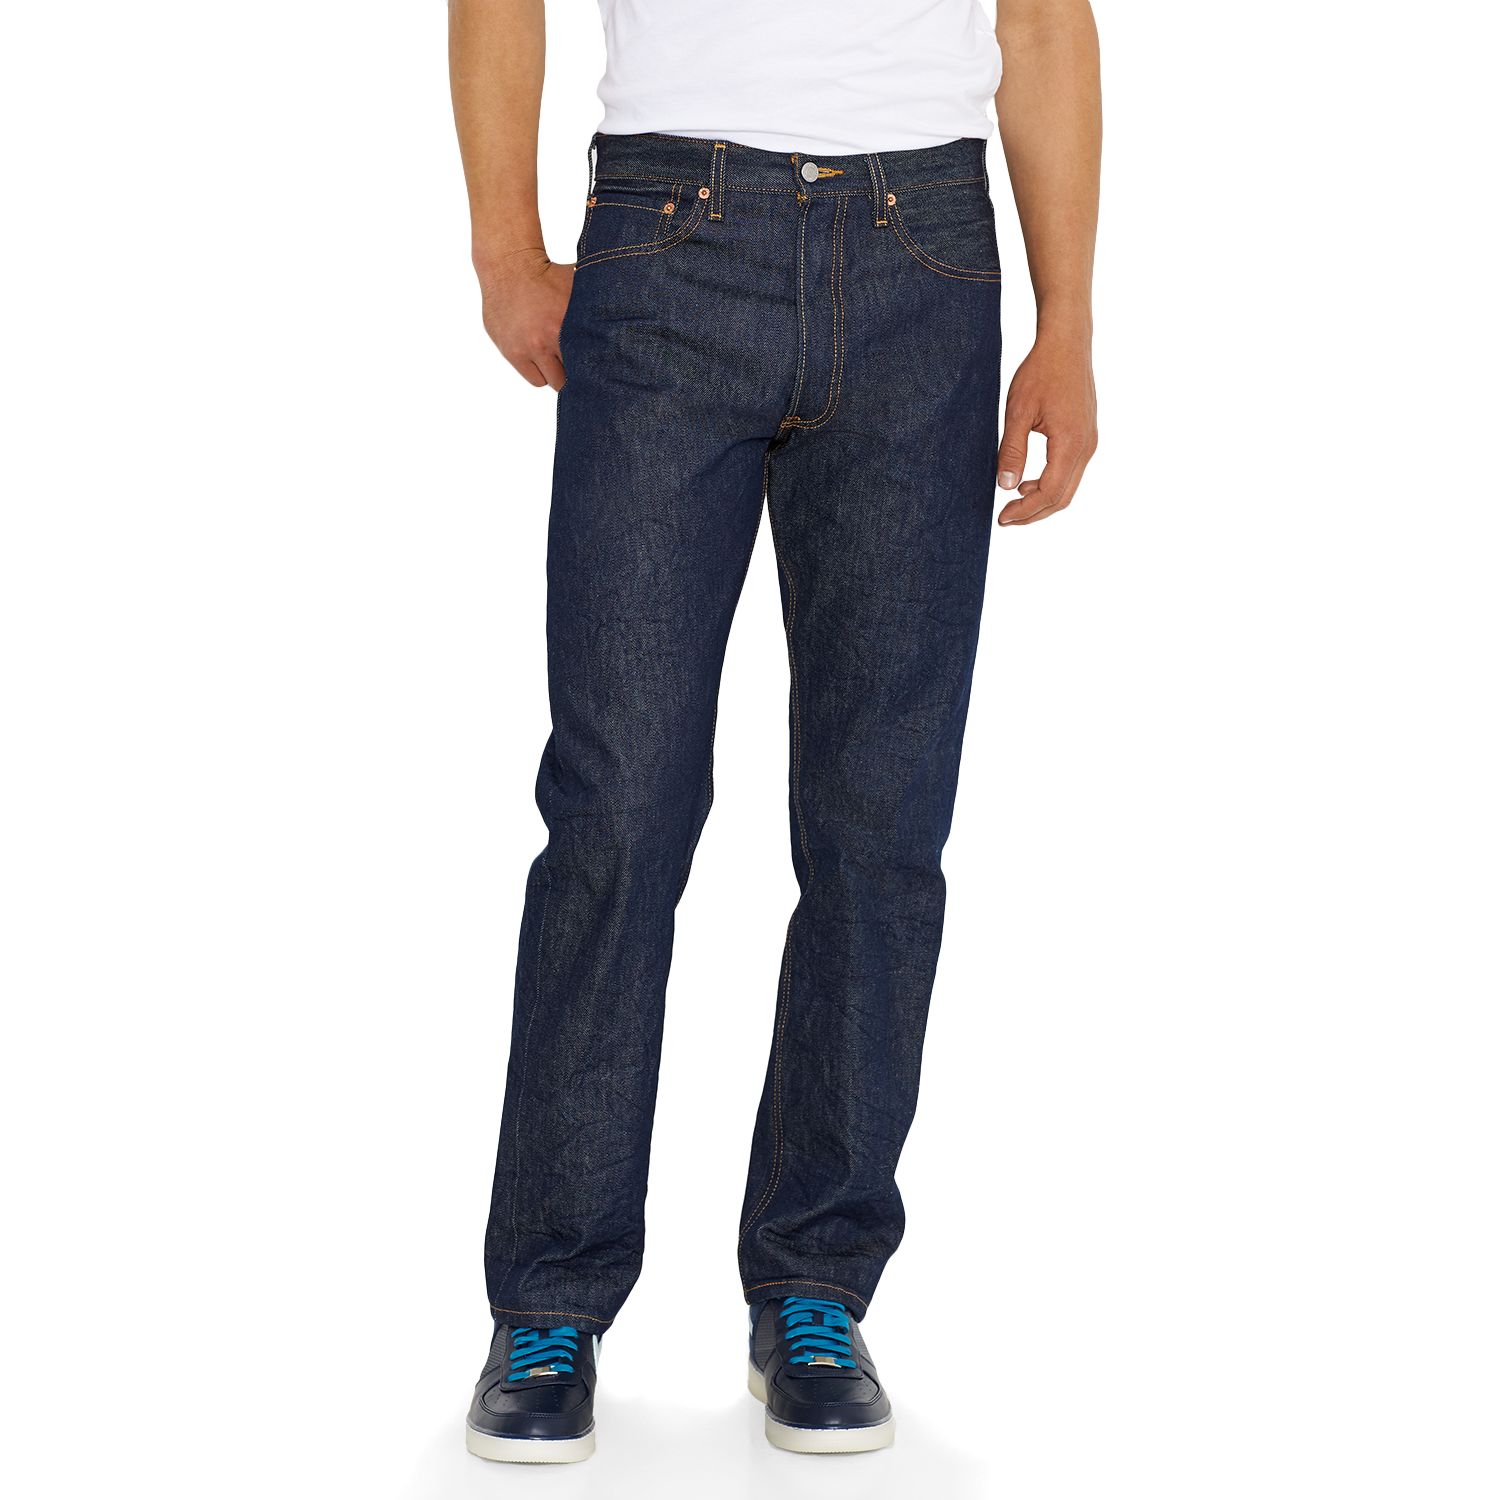 levis 501 jeans men's